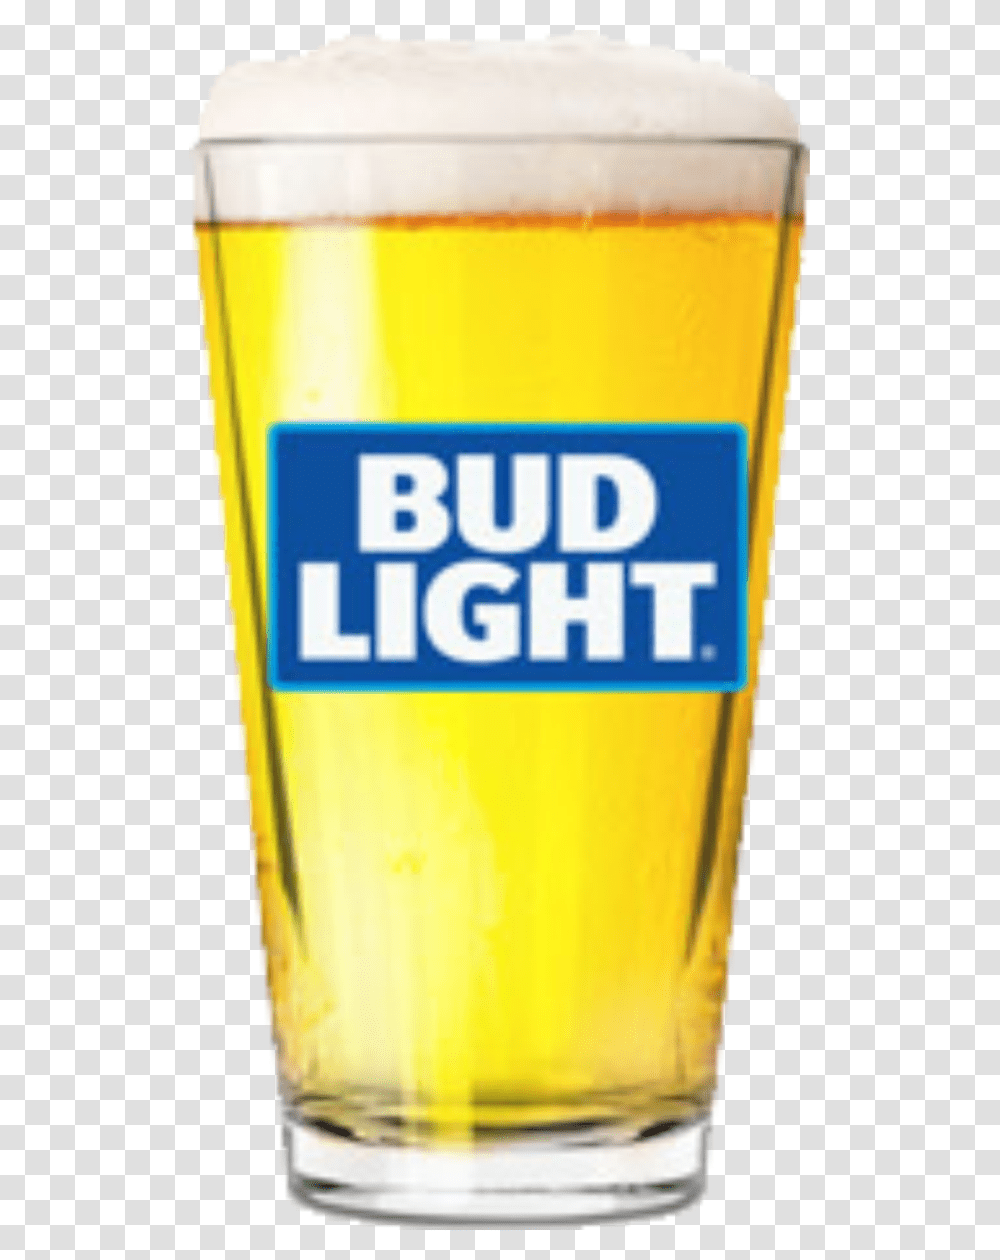 Bud Light Draft Beer, Alcohol, Beverage, Drink, Glass Transparent Png